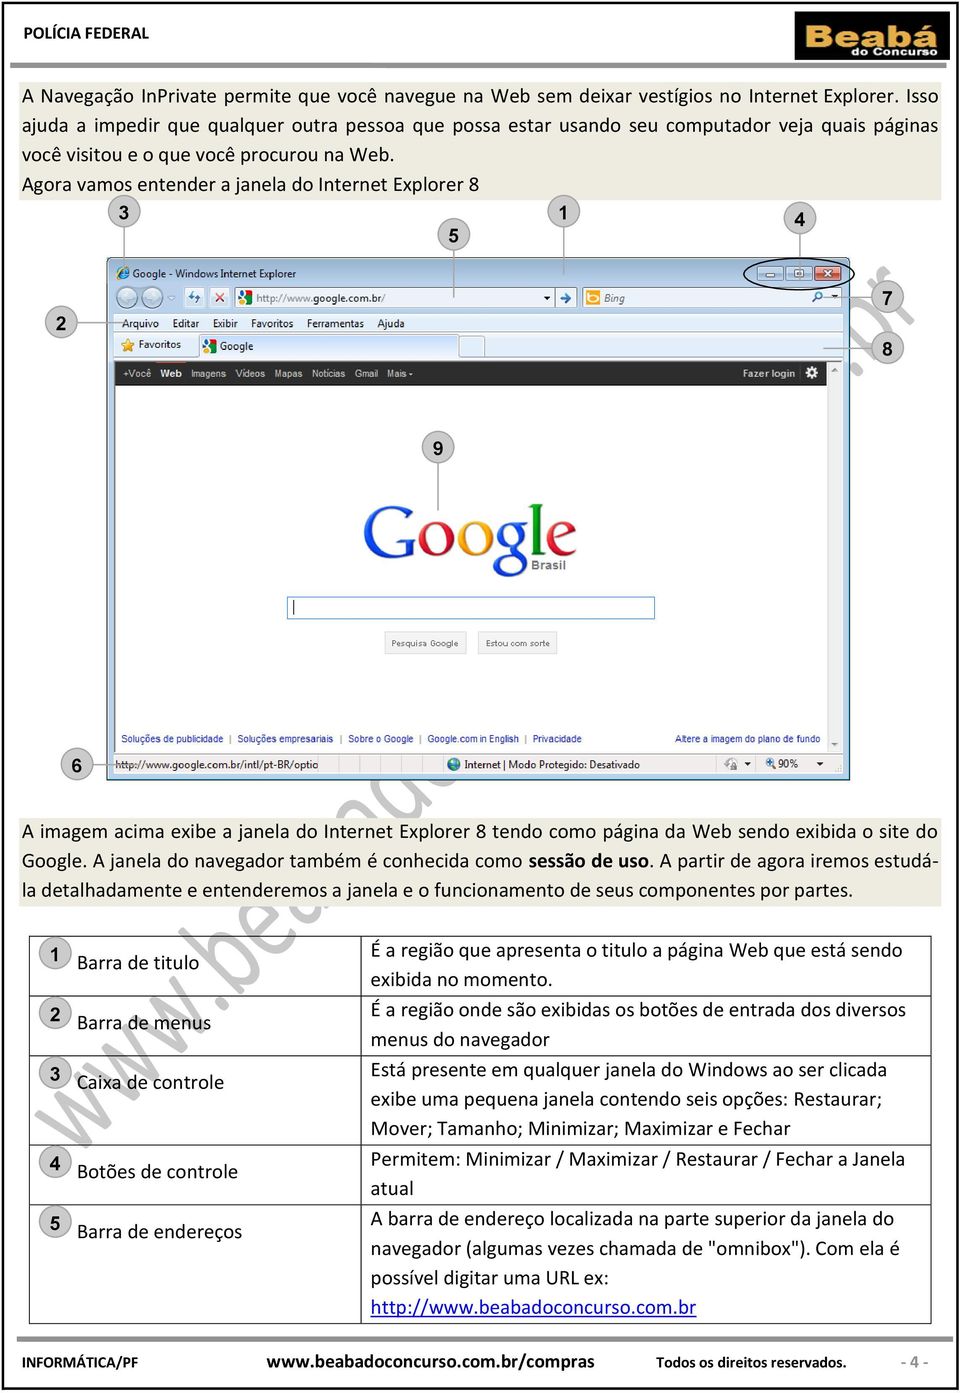 Agora vamos entender a janela do Internet Explorer 8 3 5 1 4 2 7 8 9 6 A imagem acima exibe a janela do Internet Explorer 8 tendo como página da Web sendo exibida o site do Google.